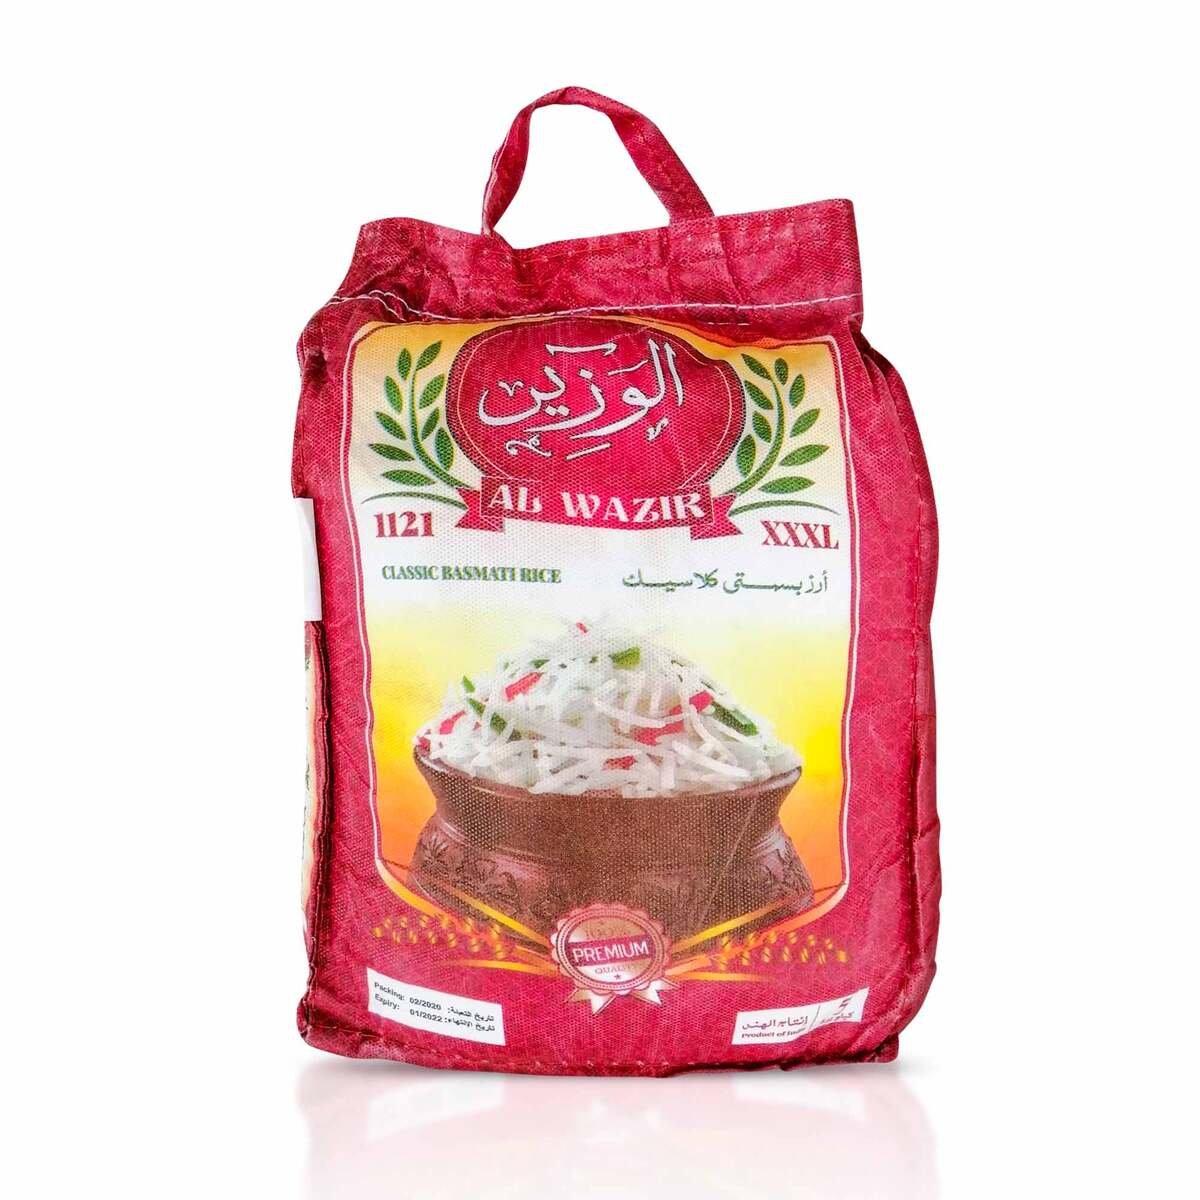 Al Wazir Classic Basmati Rice 1121 5kg